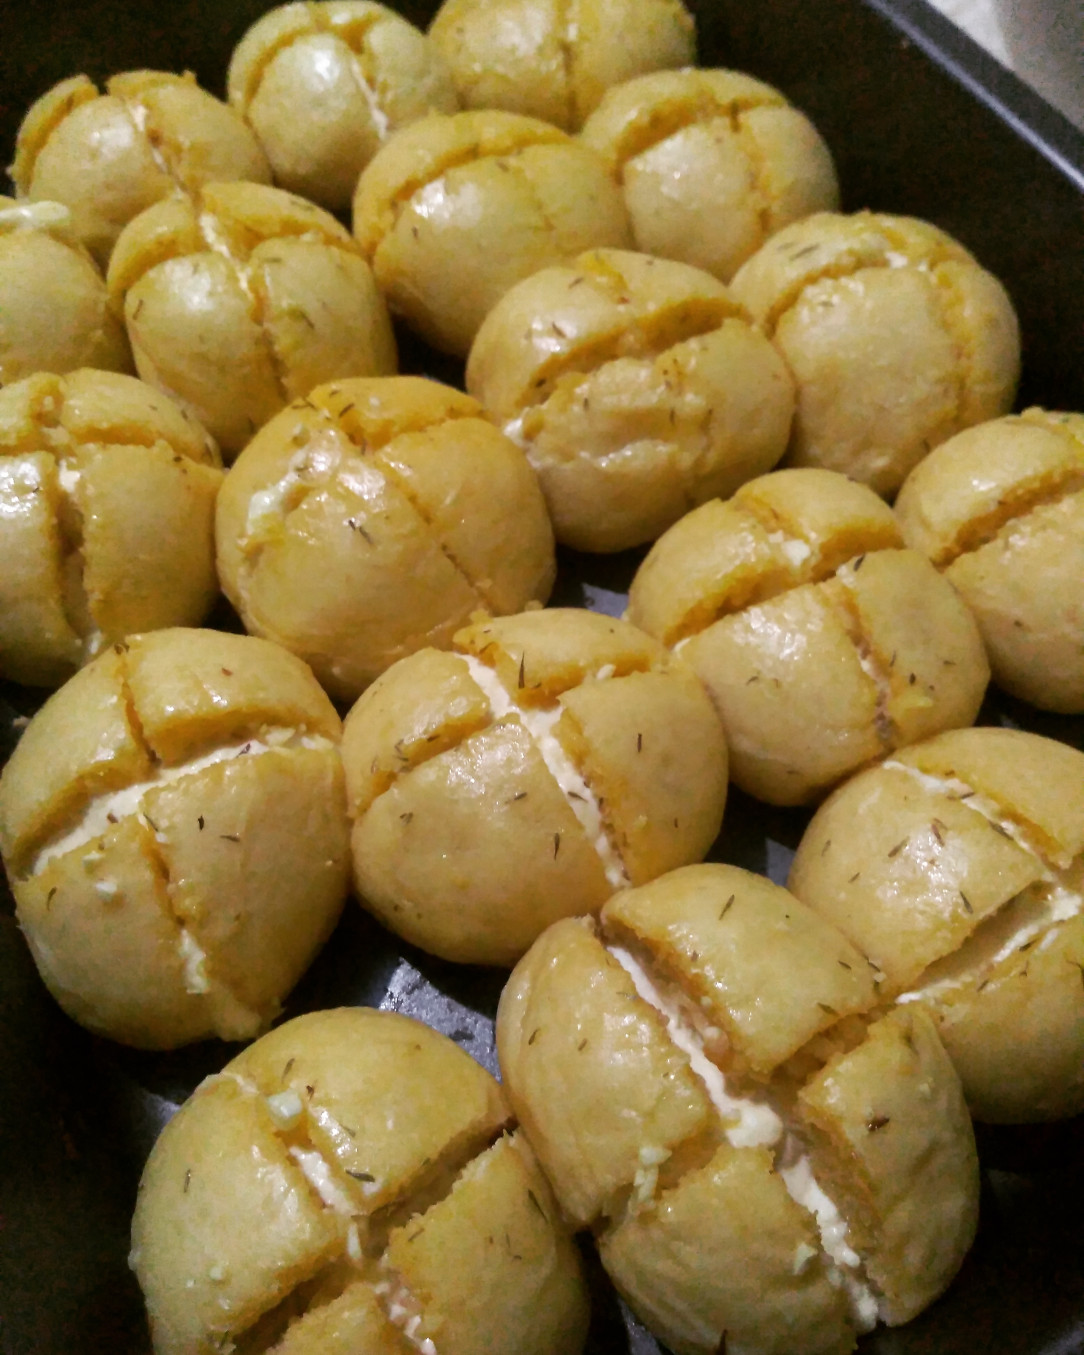 Korean creamcheese garlic bread